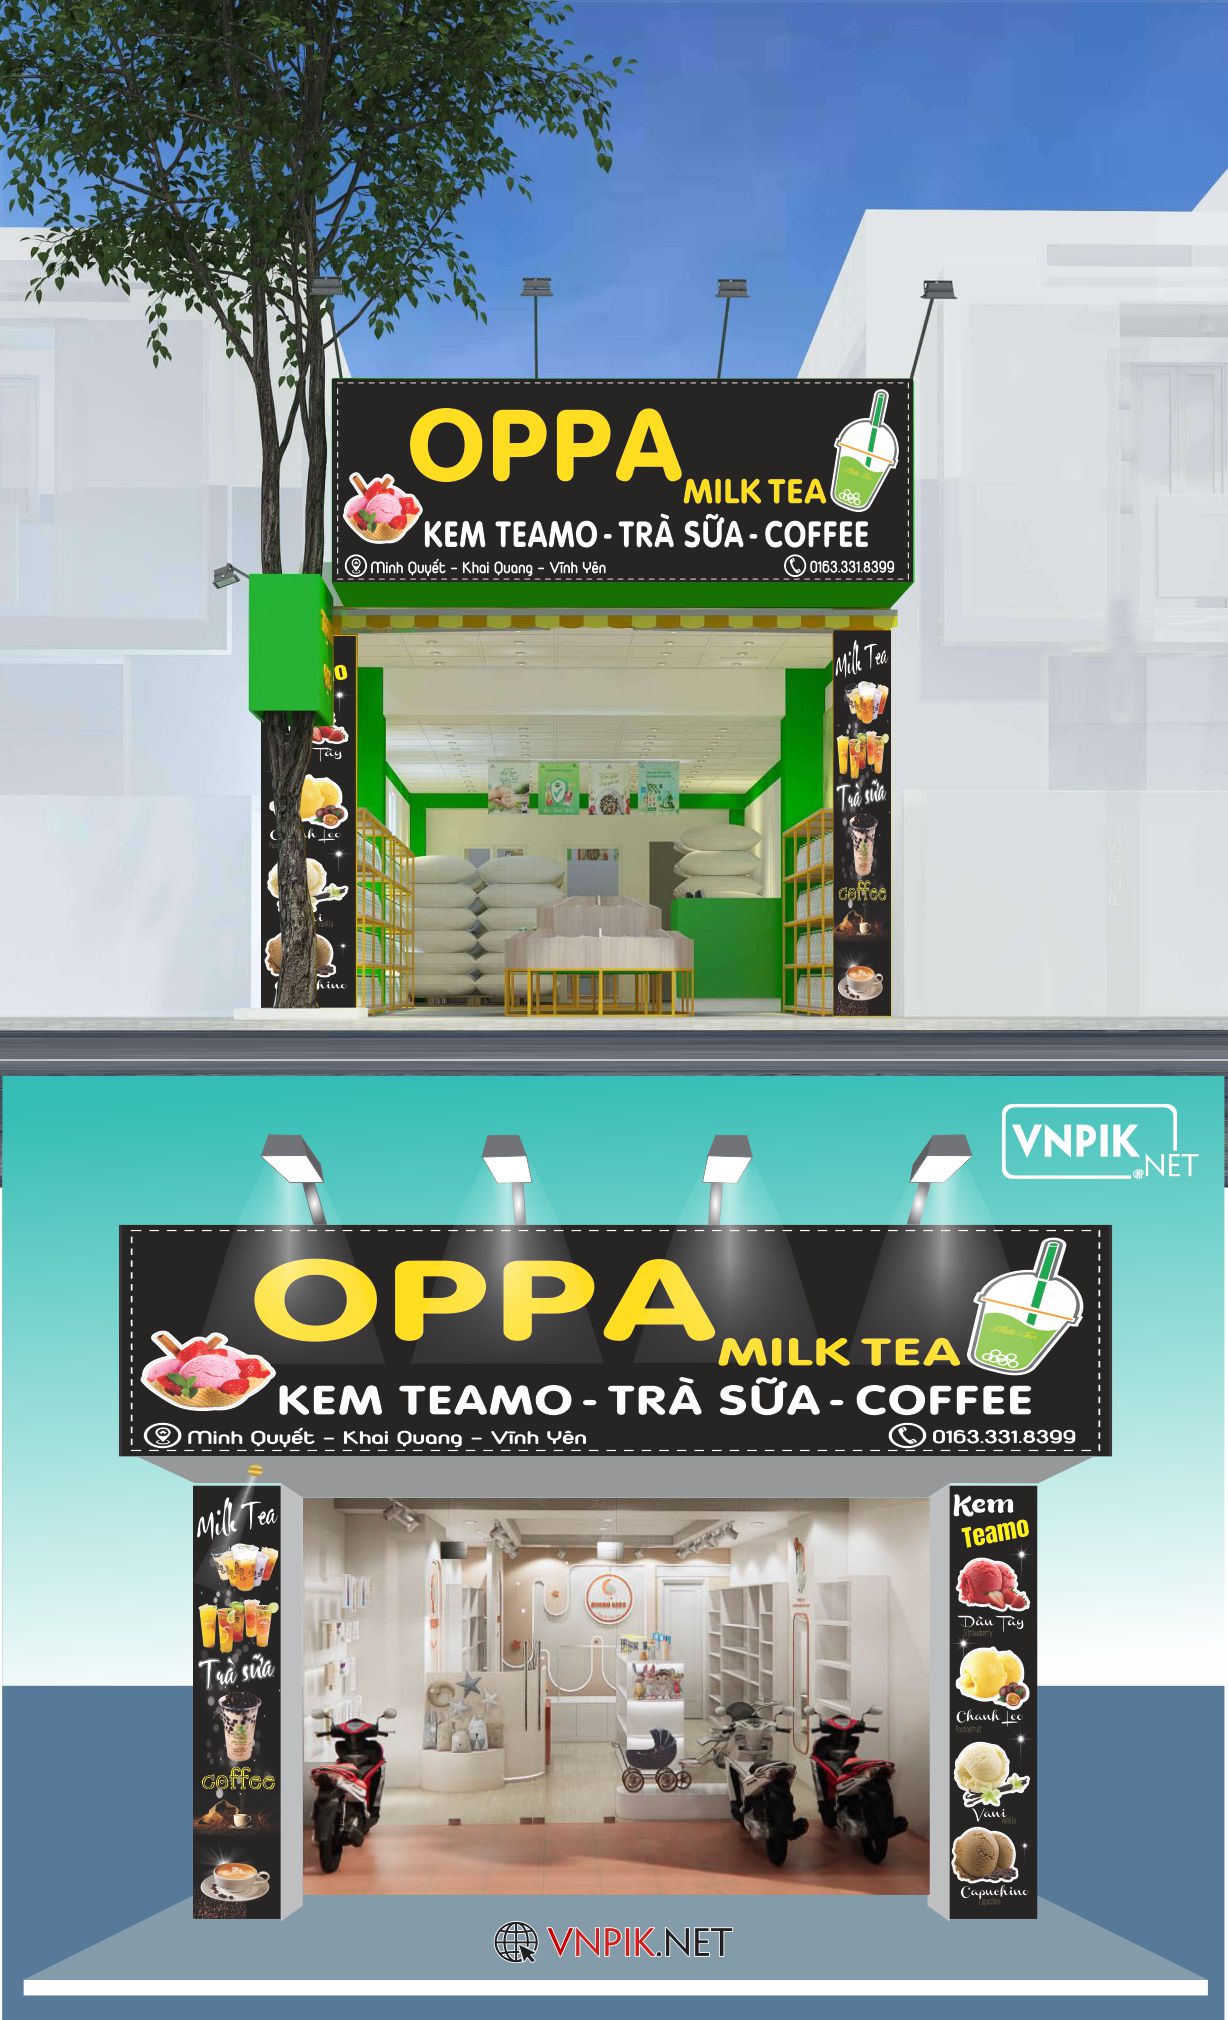 Biển bảng quảng cáo kem teamo – trà sữa, coffee